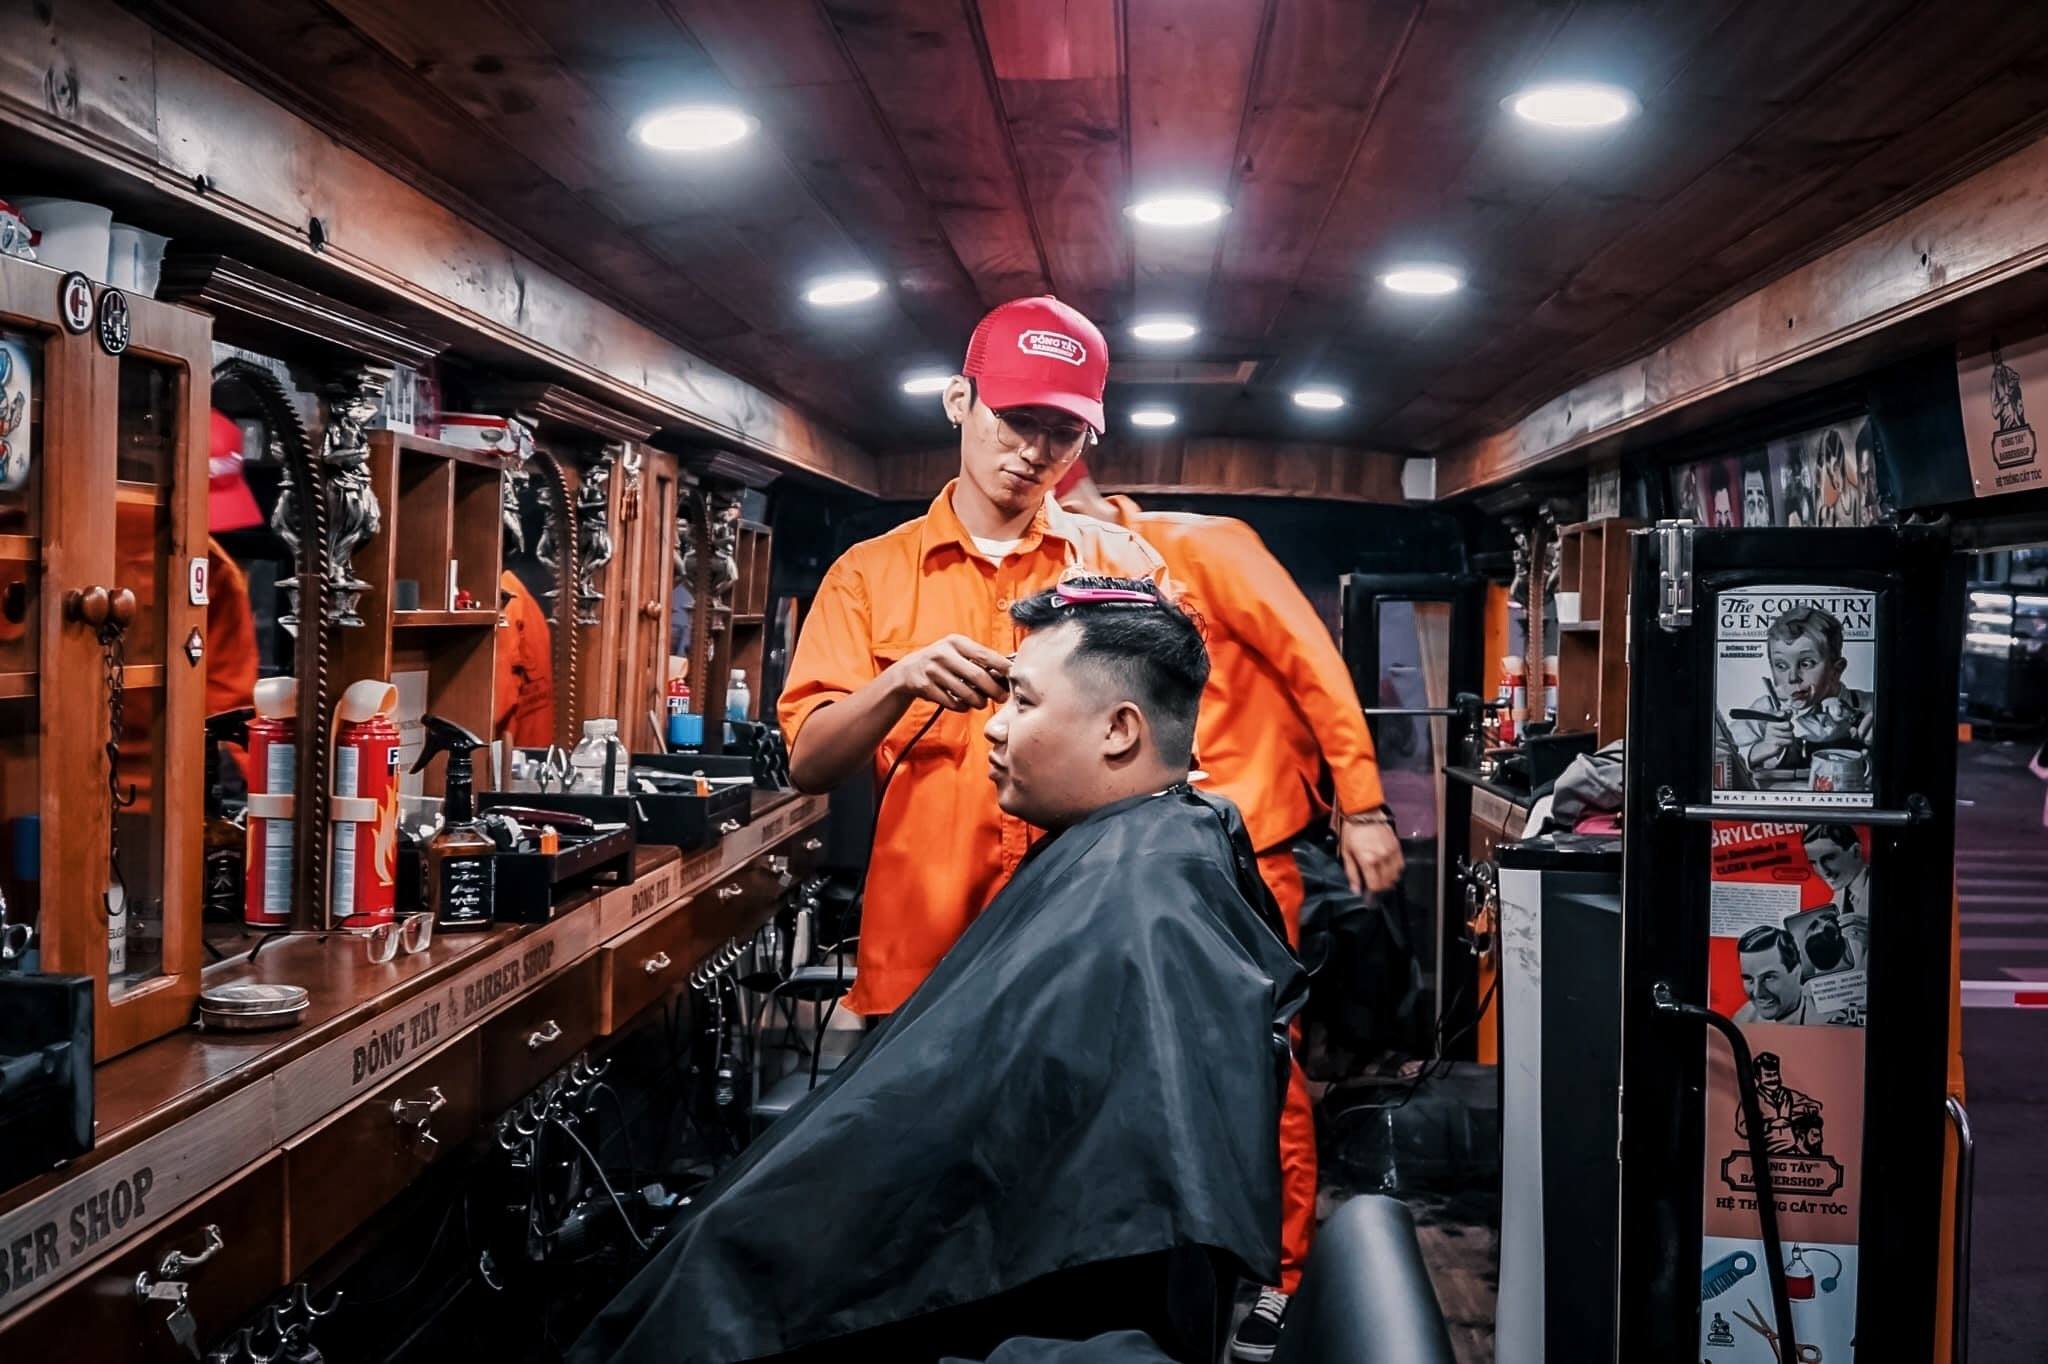 Quý ông đang tìm kiếm một kiểu tóc nam ấn tượng tại Phú Nhuận? Đến ngay tiệm cắt tóc nam đẹp địa chỉ của chúng tôi để trải nghiệm dịch vụ cắt tóc chuyên nghiệp, tinh tế và đẳng cấp. Bạn sẽ được chăm sóc bởi những kiến ​​thức và kinh nghiệm của những chuyên gia cắt tóc hàng đầu tại Phú Nhuận.